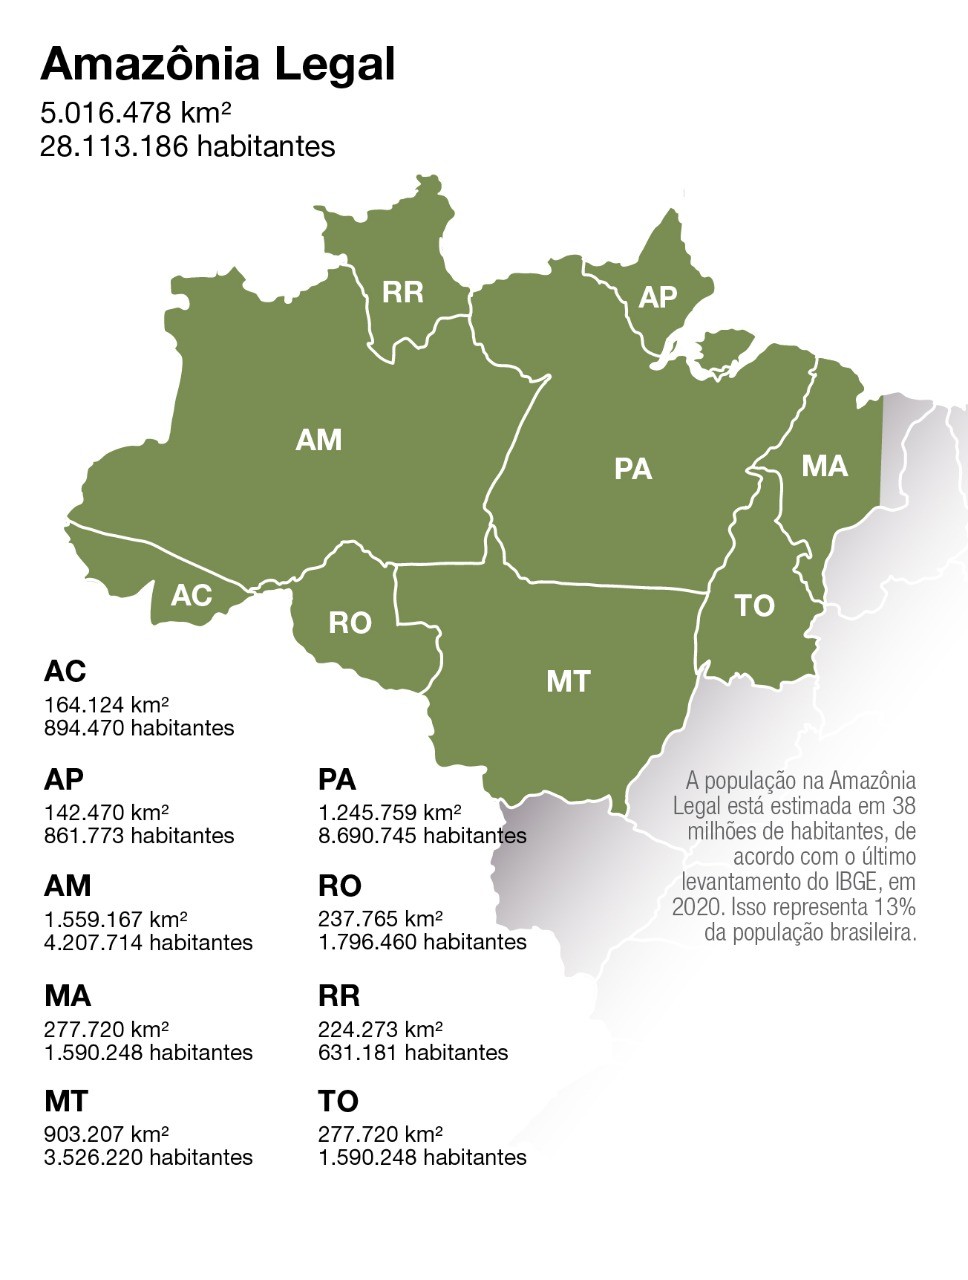 Mapa da Amazônia Legal mostra extensão e população dos estados que a compõe (Foto: Felipe Yatabe/Ed. Globo)